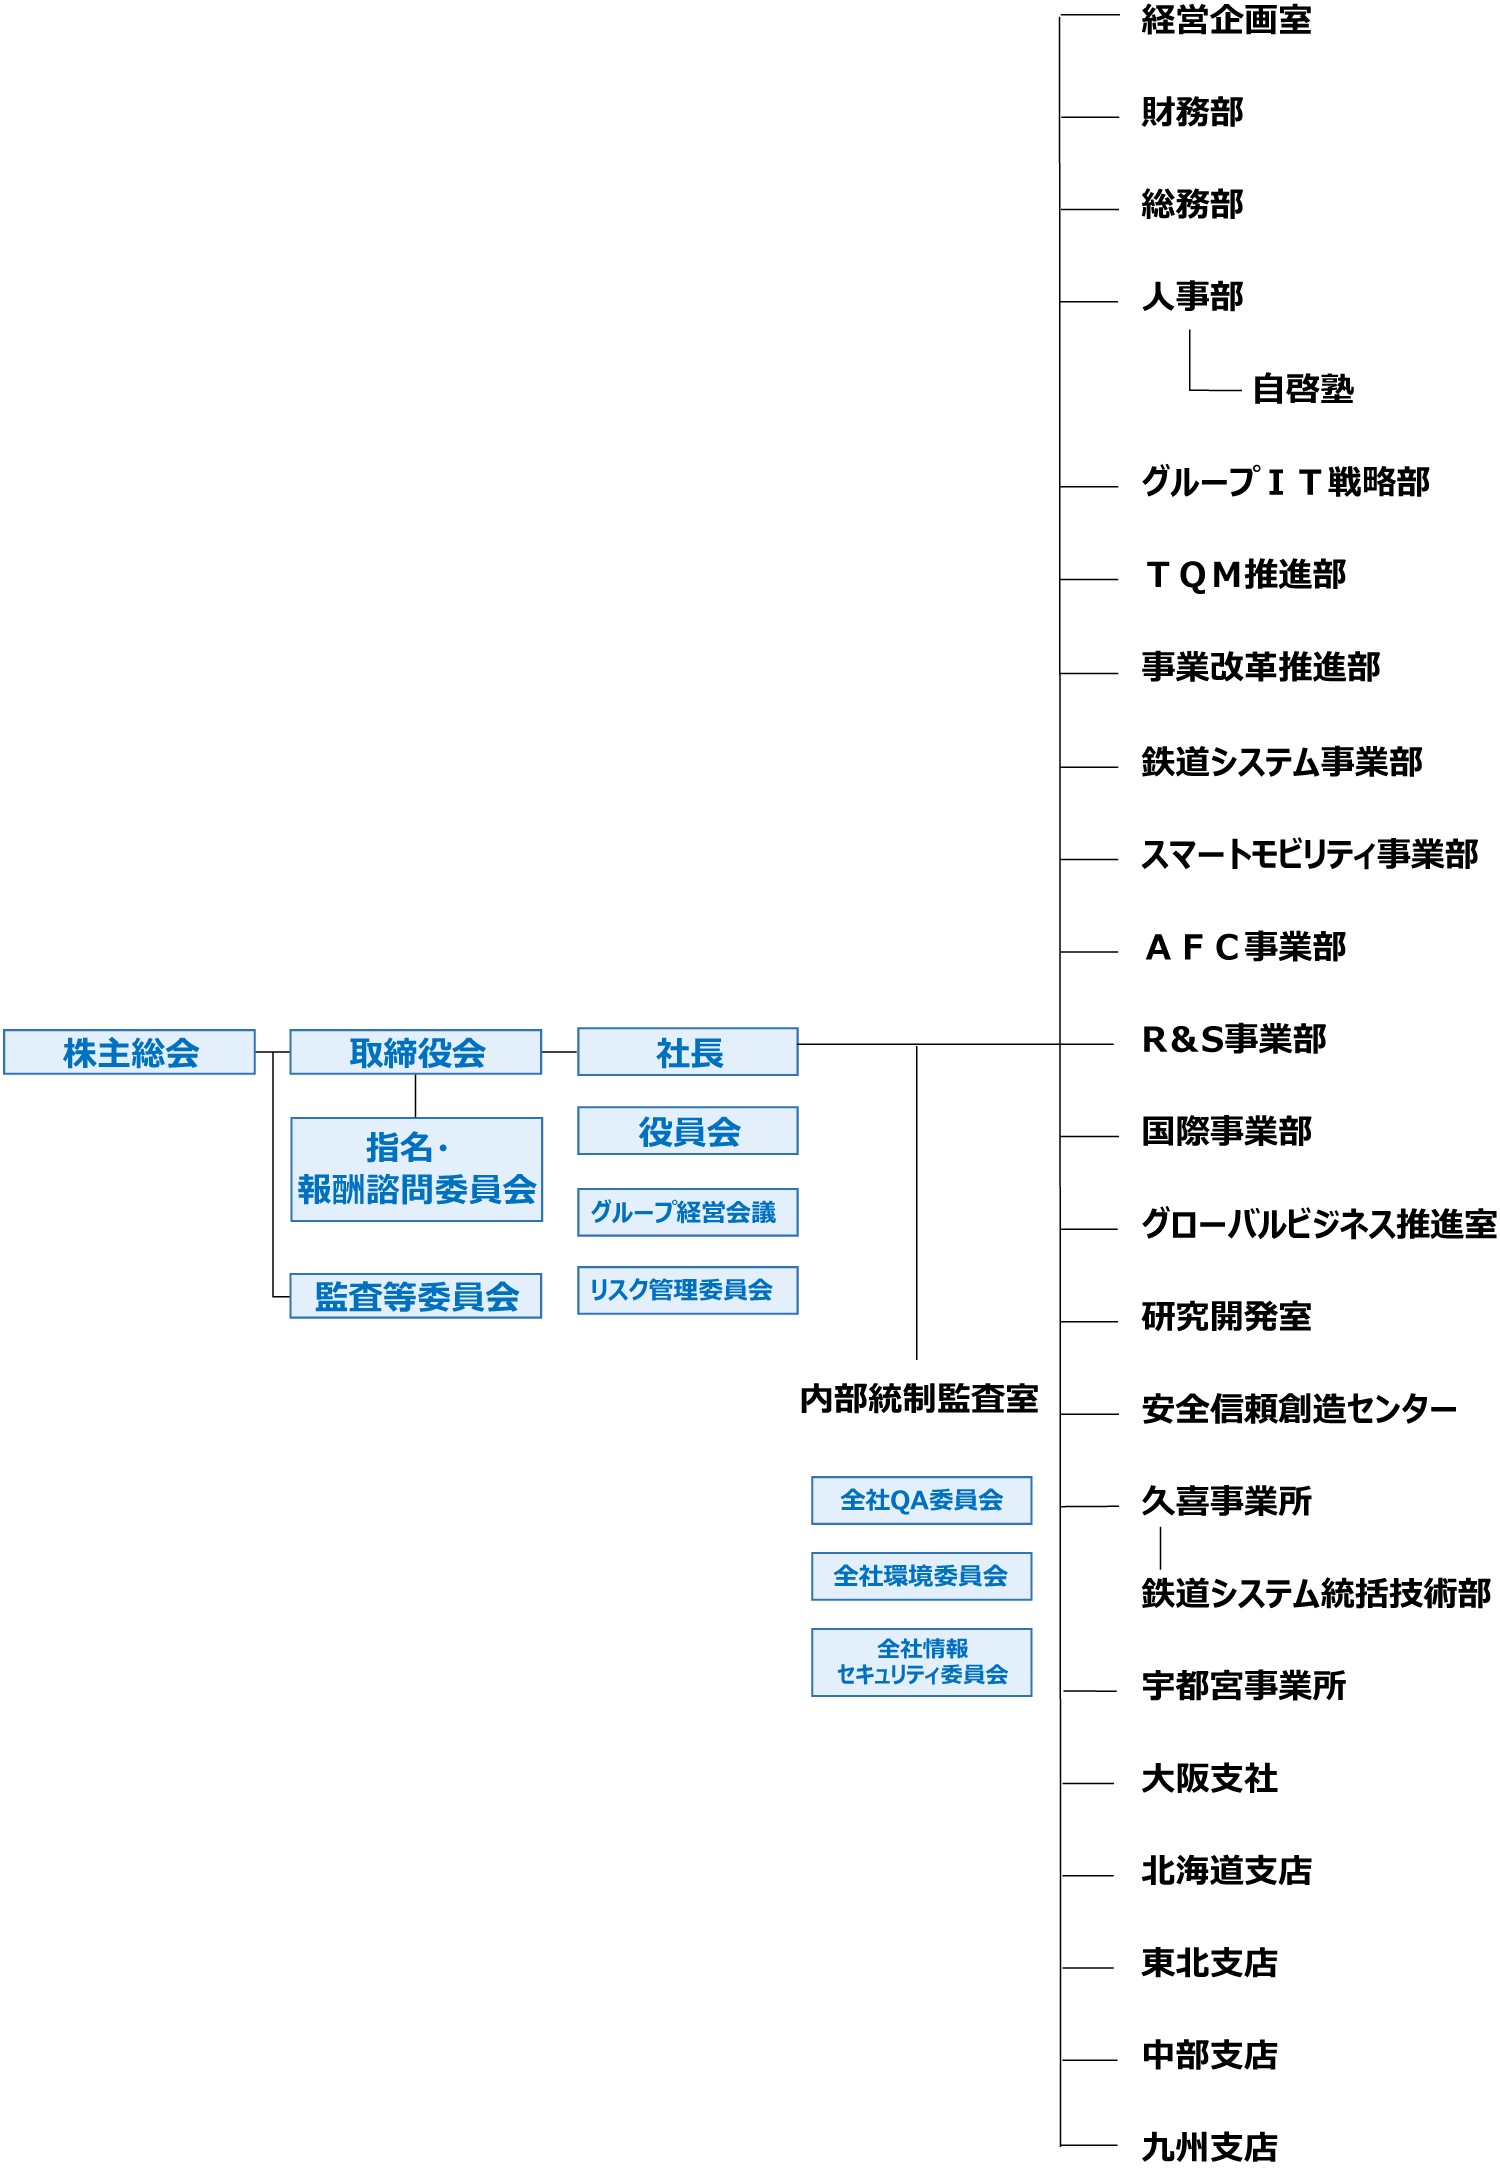 日本信号株式会社組織図